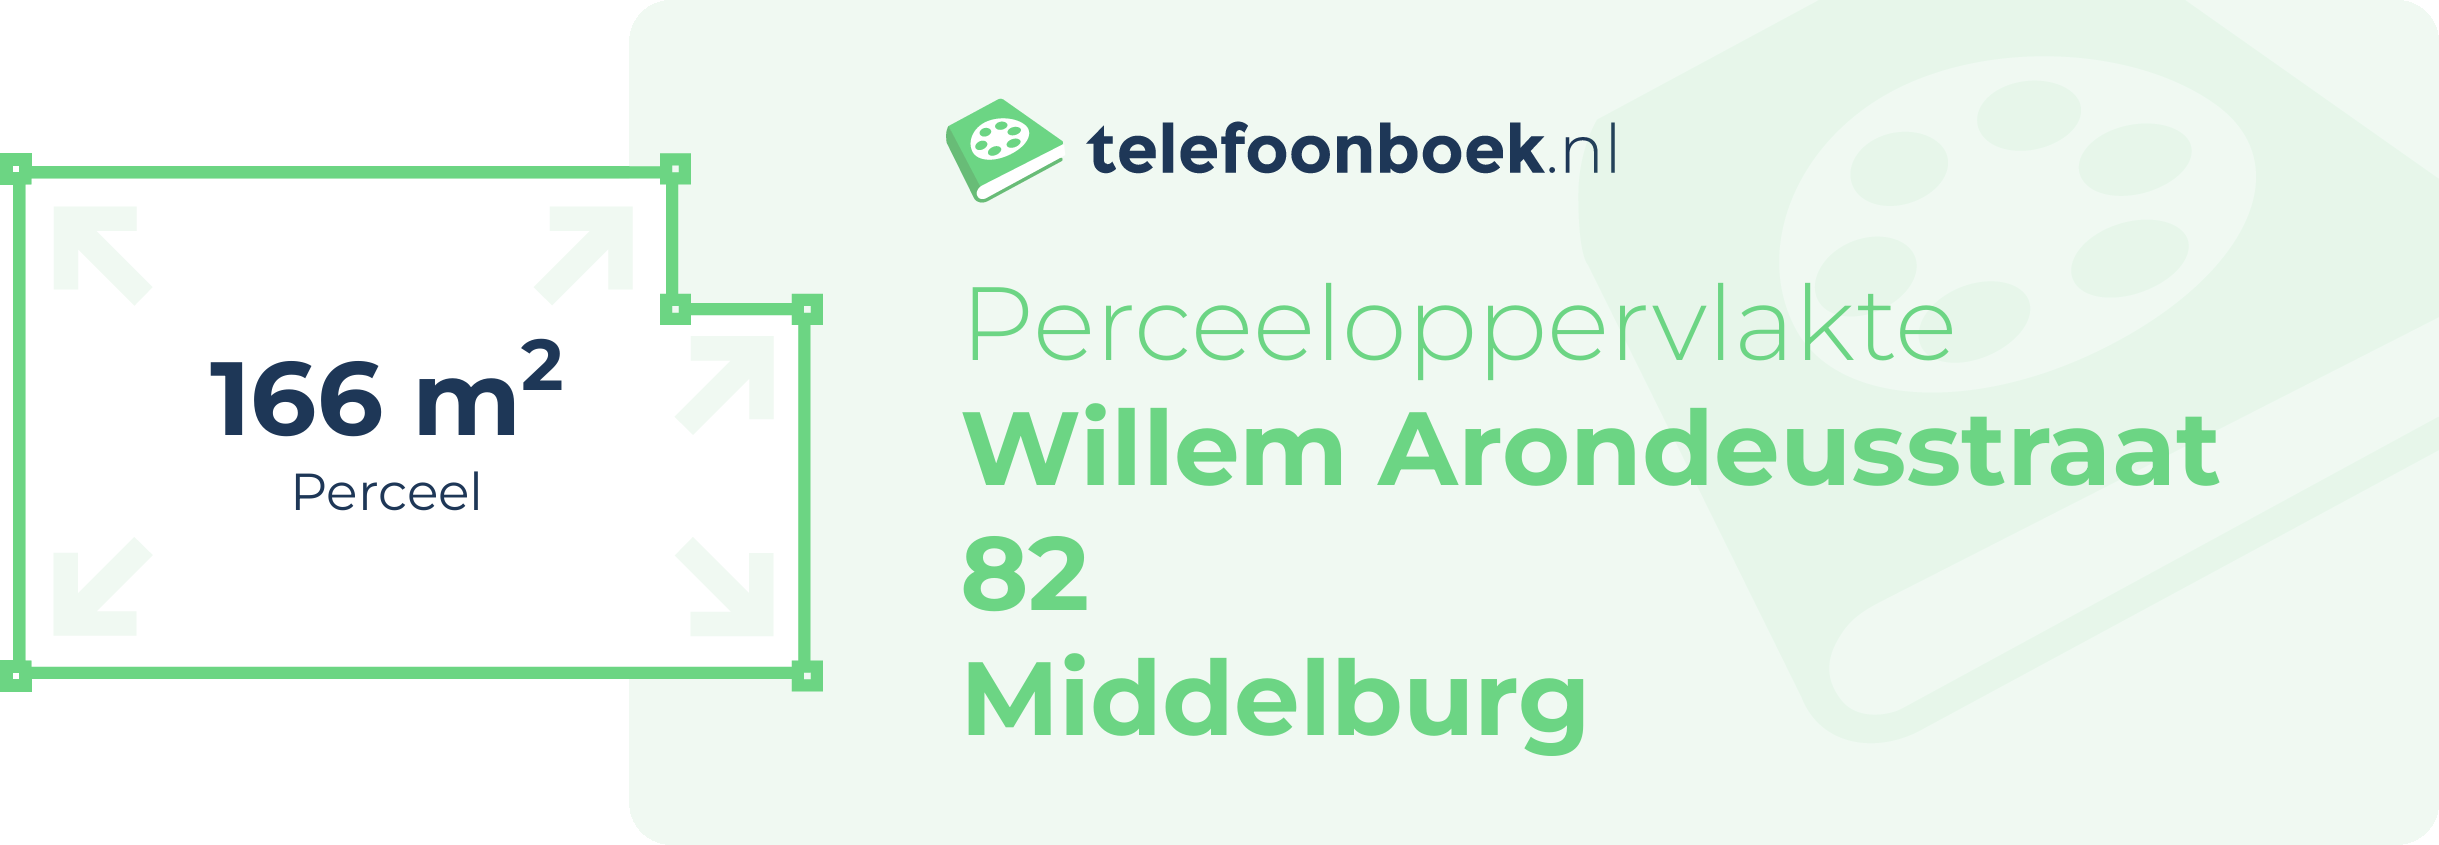 Perceeloppervlakte Willem Arondeusstraat 82 Middelburg